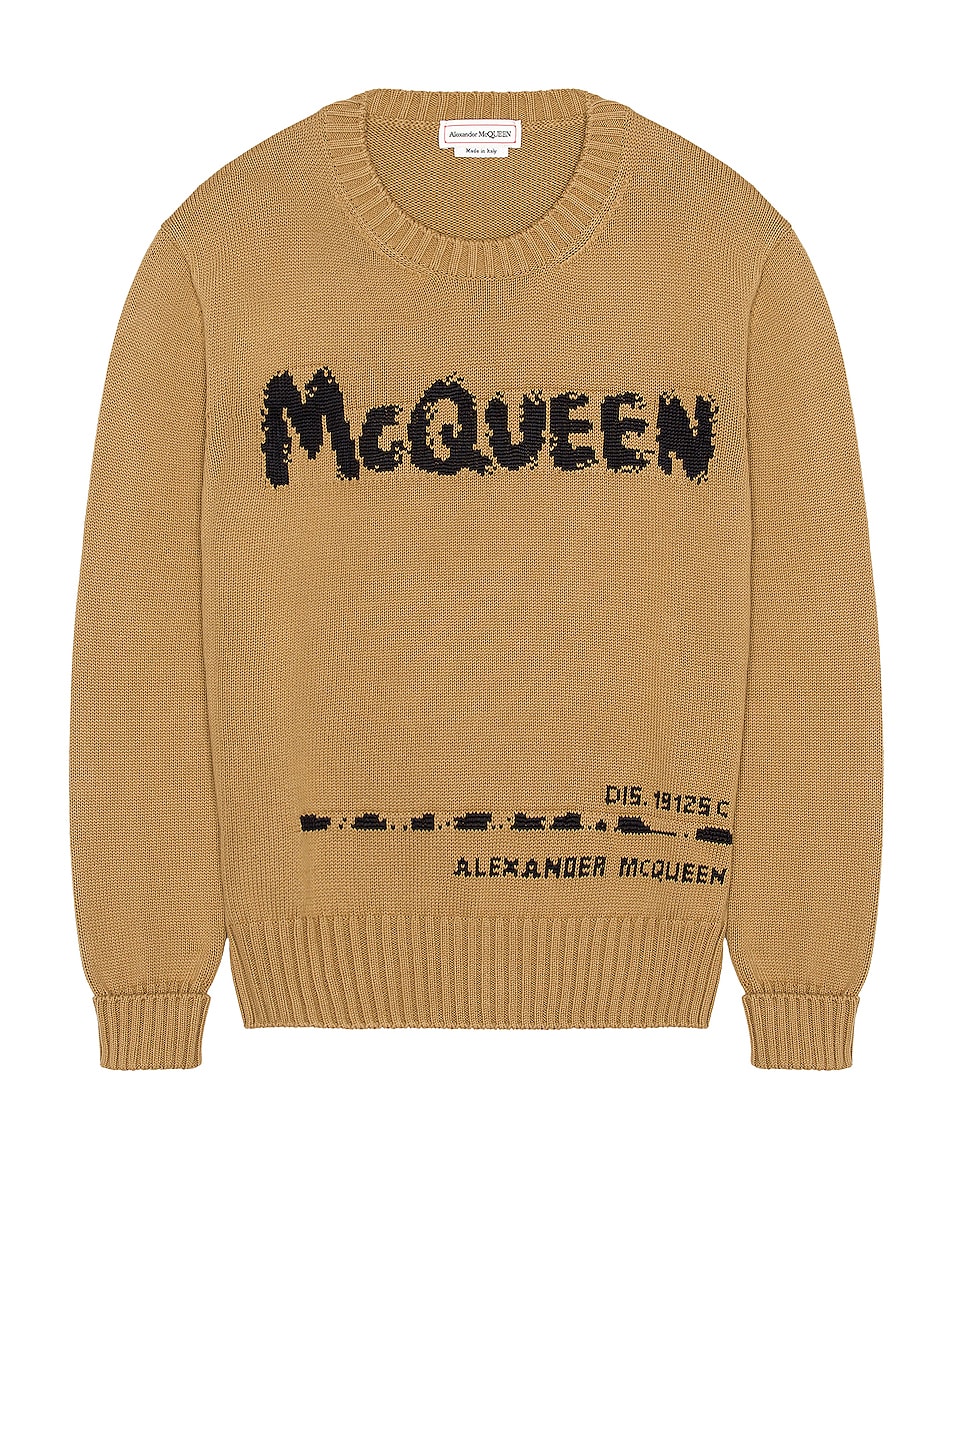 Image 1 of Alexander McQueen Crew Neck Pullover in Beige & Black